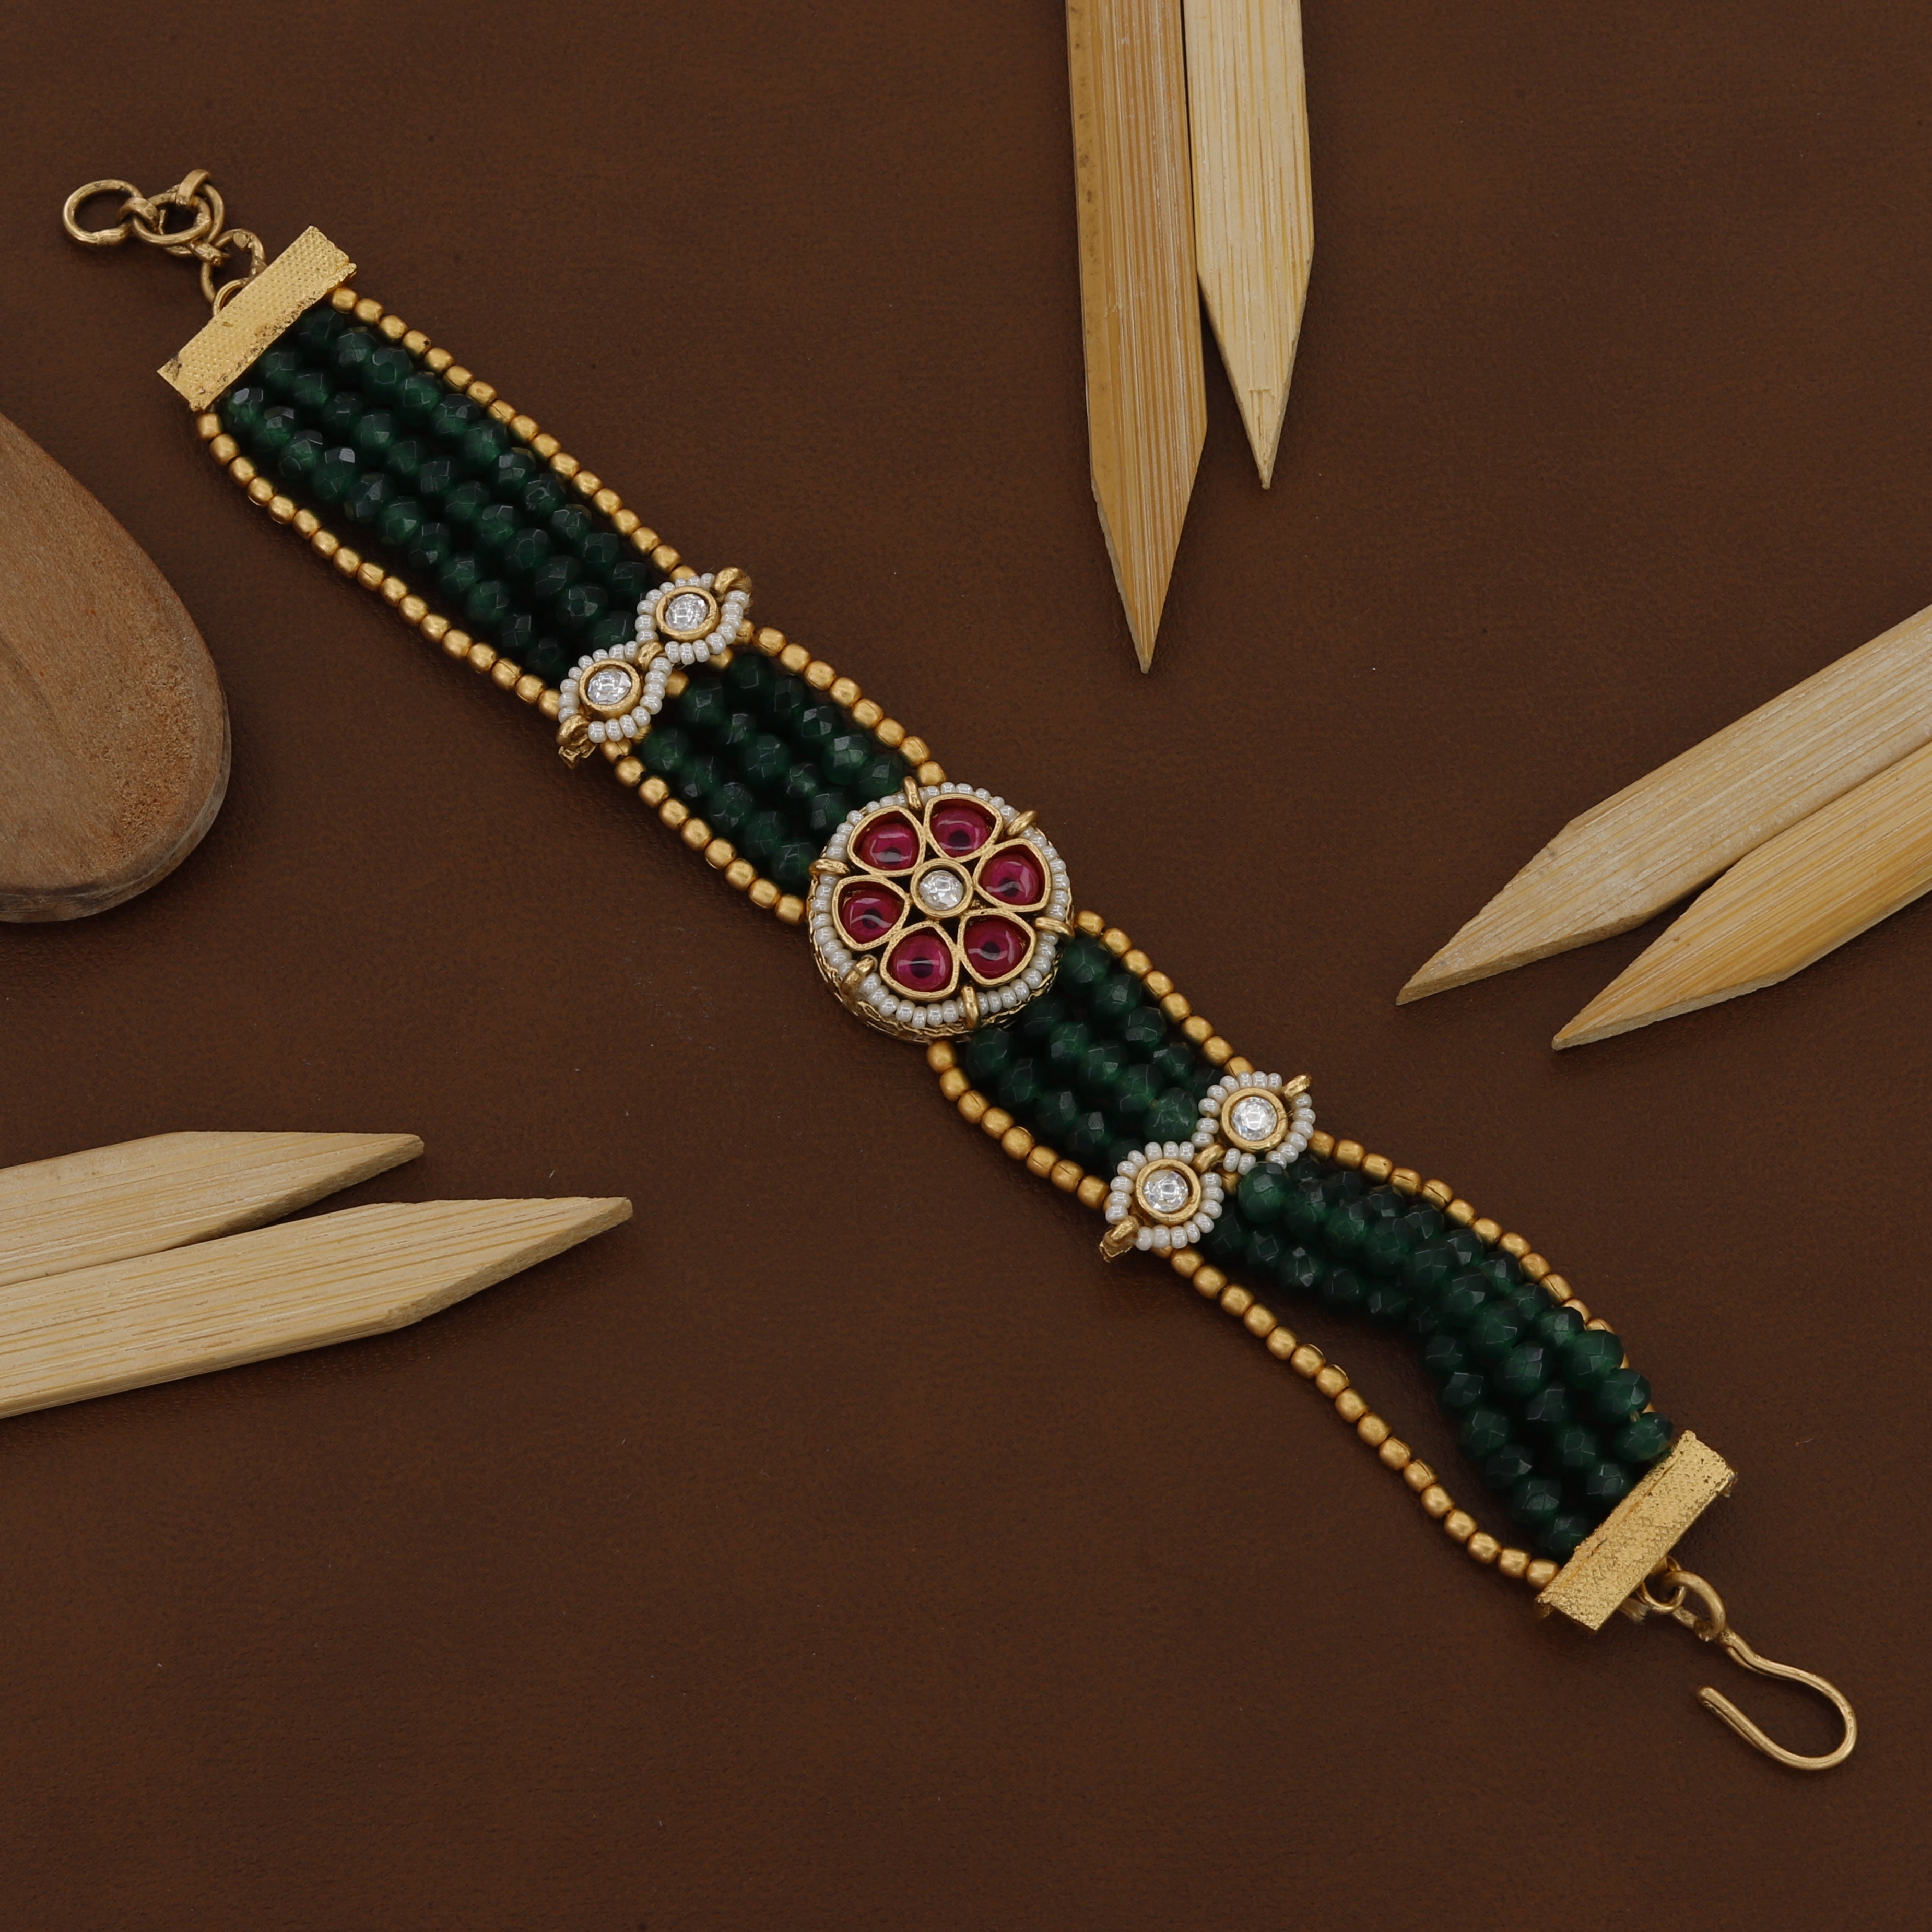 Green Colour Antique Loose Bracelet